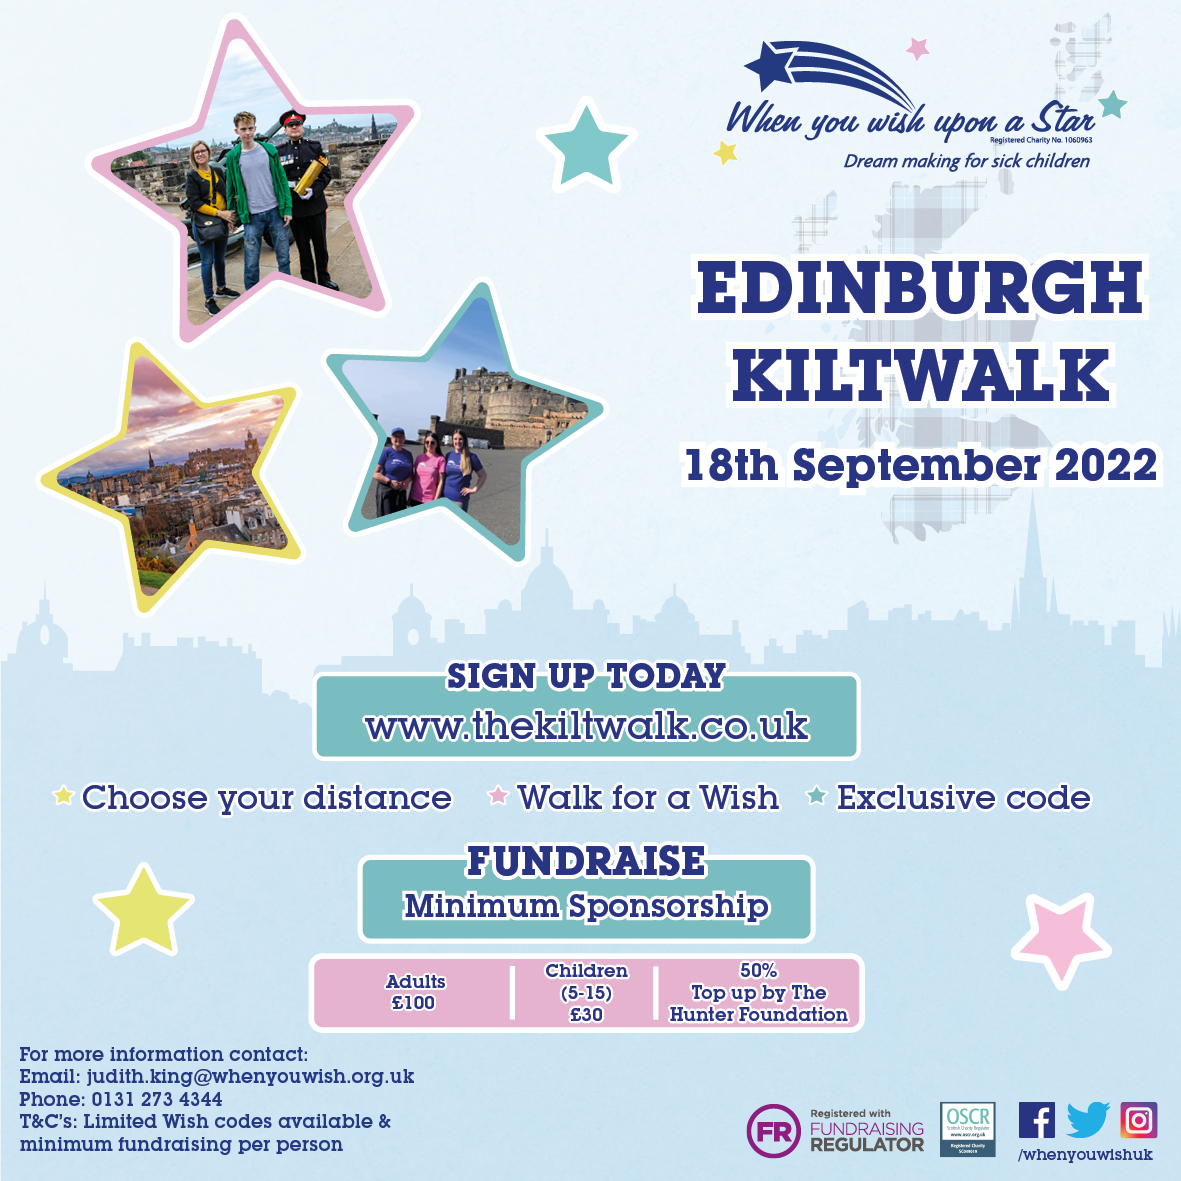 Kiltwalk Edinburgh 2022